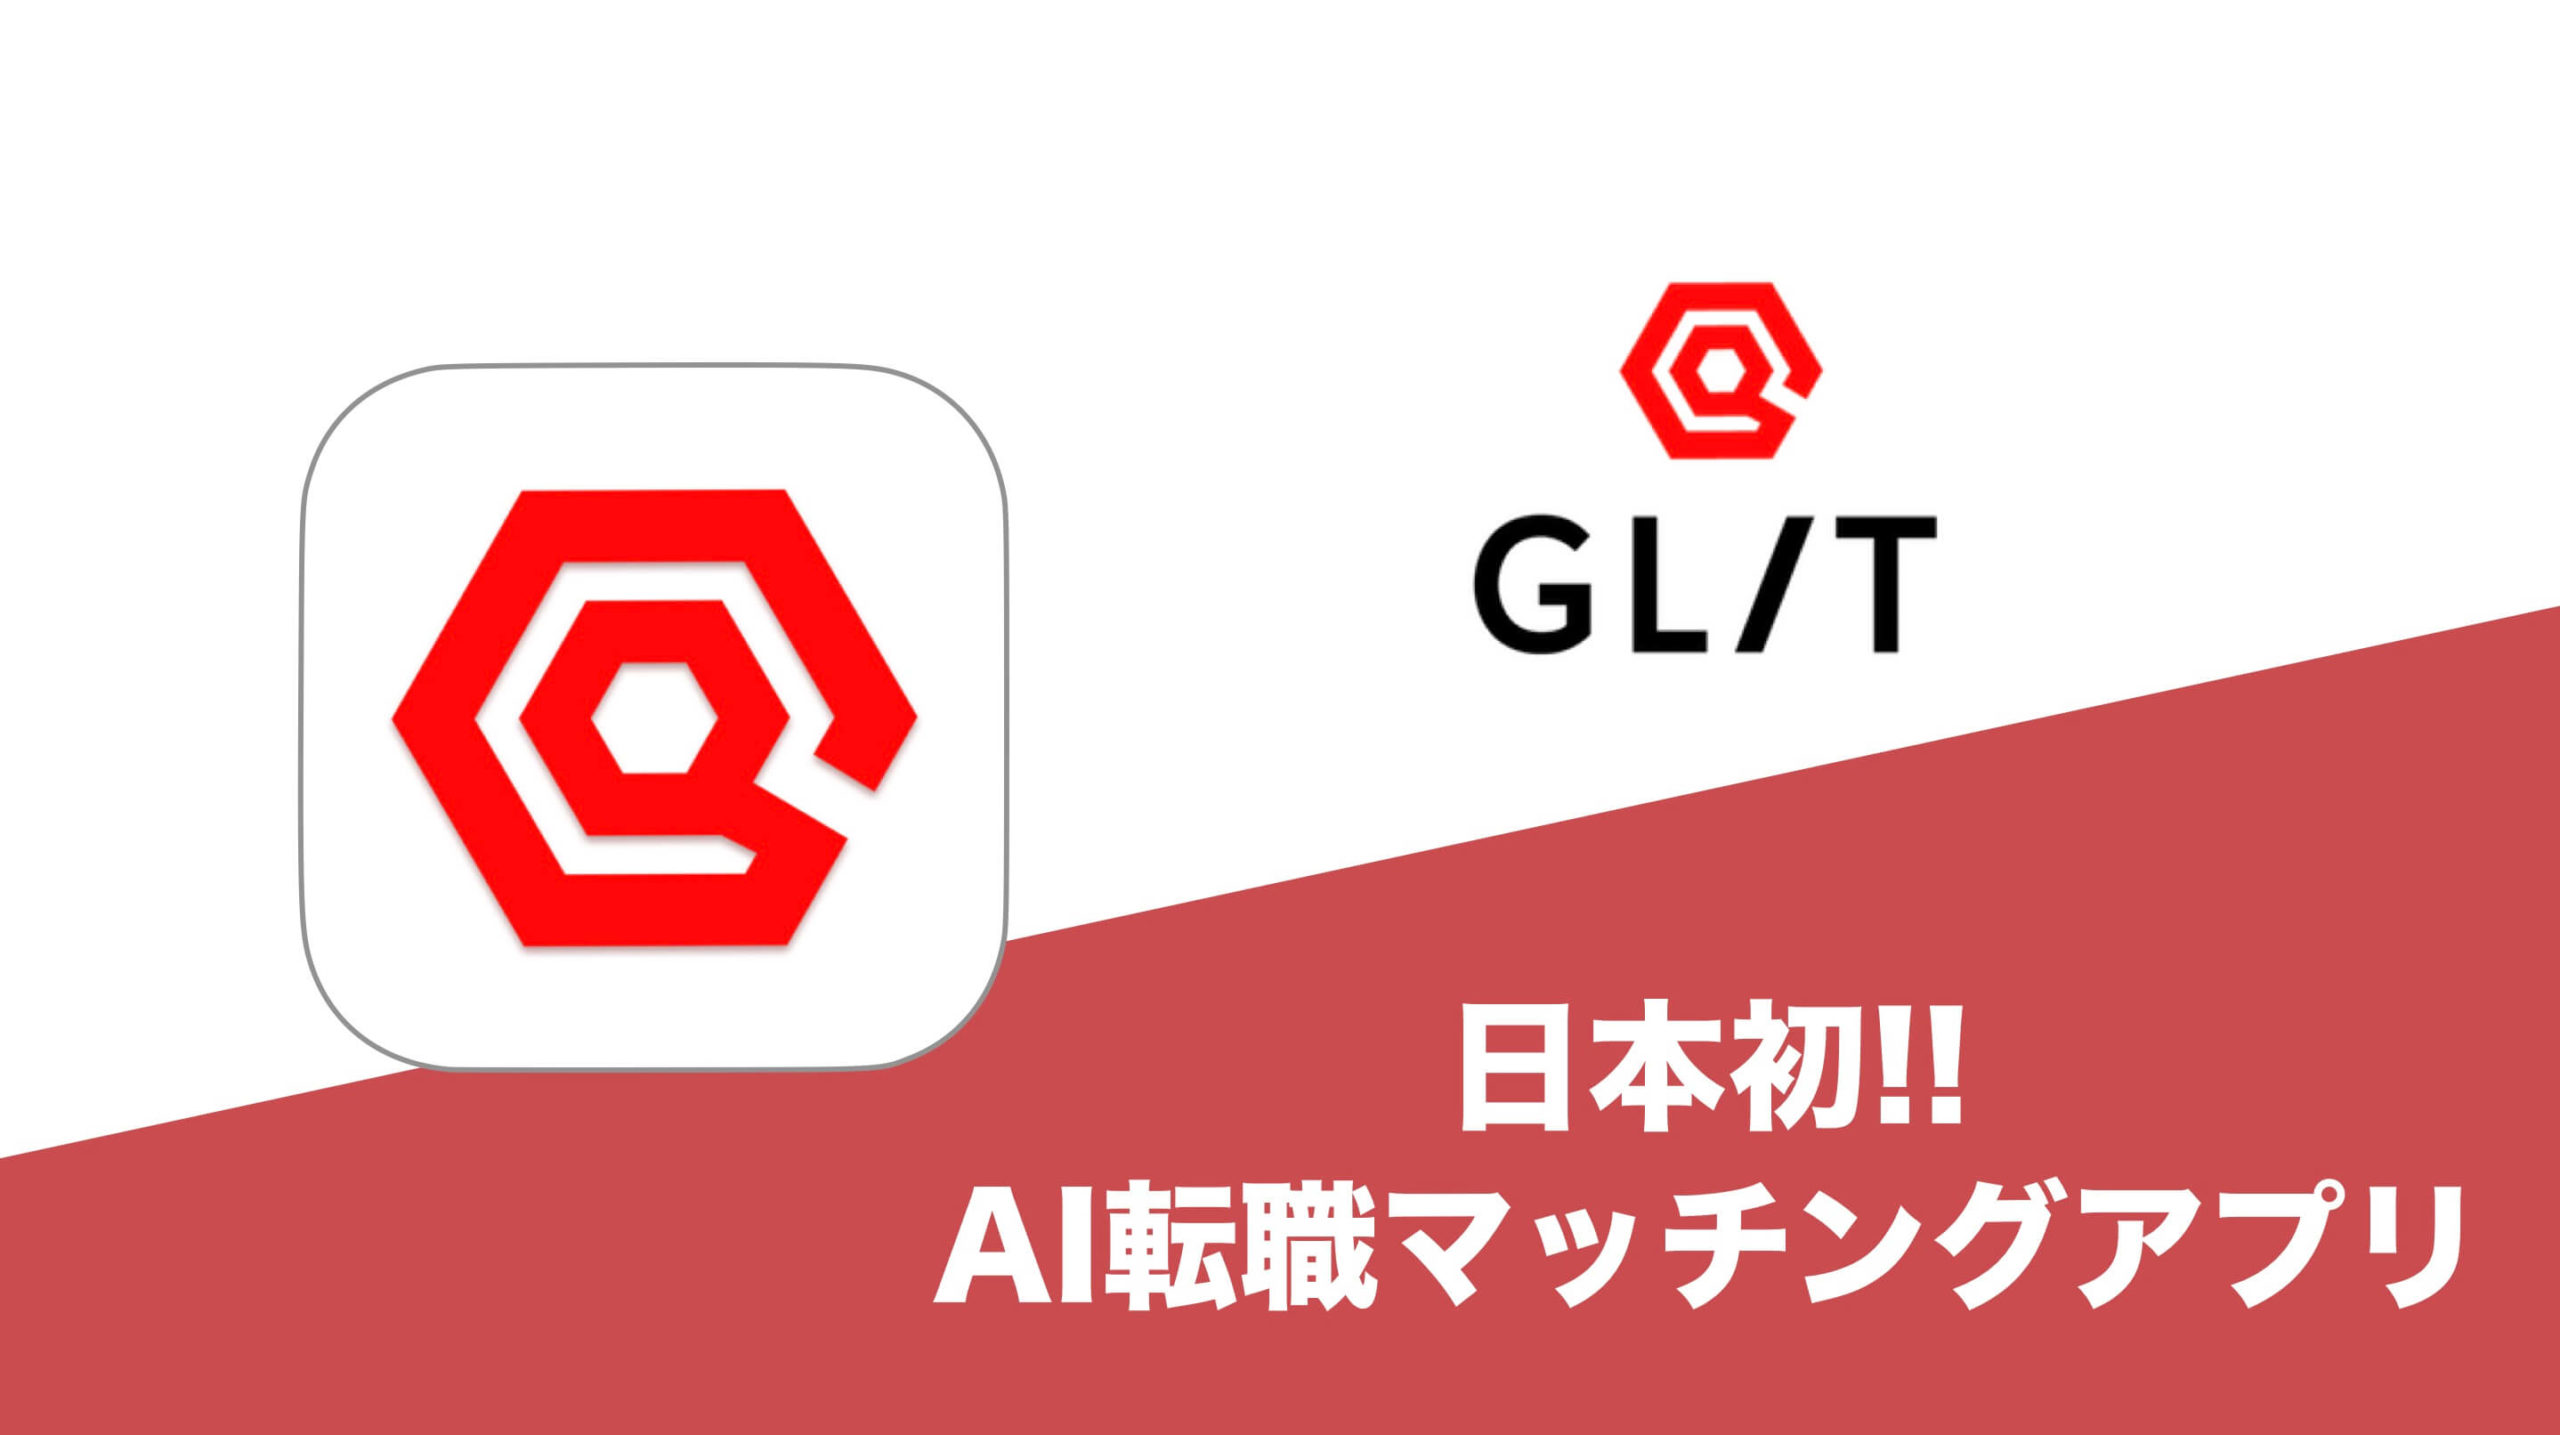 AI転職アプリ「GLIT」の評判